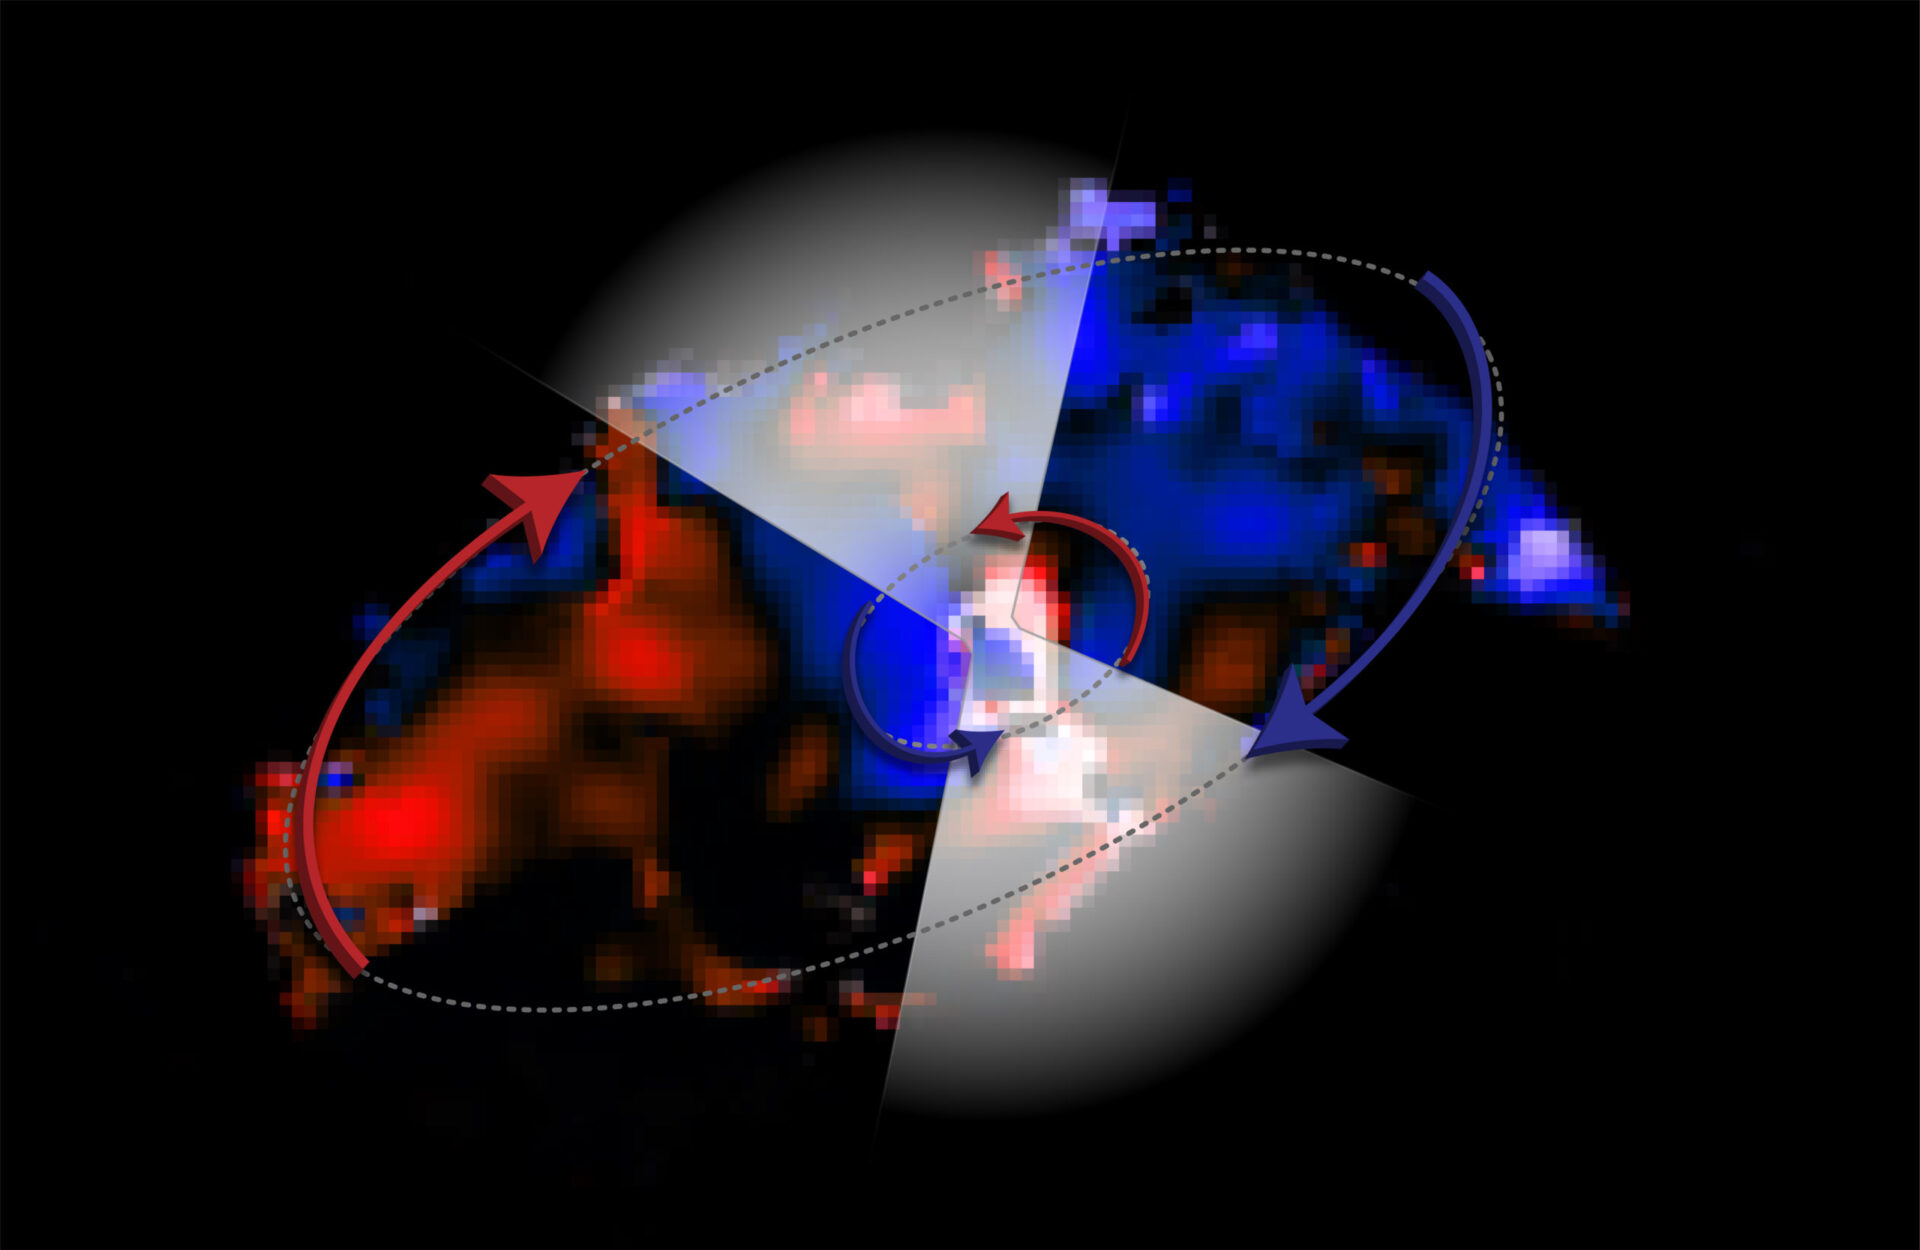 ALMA observa inesperados flujos opuestos alrededor de agujero negro